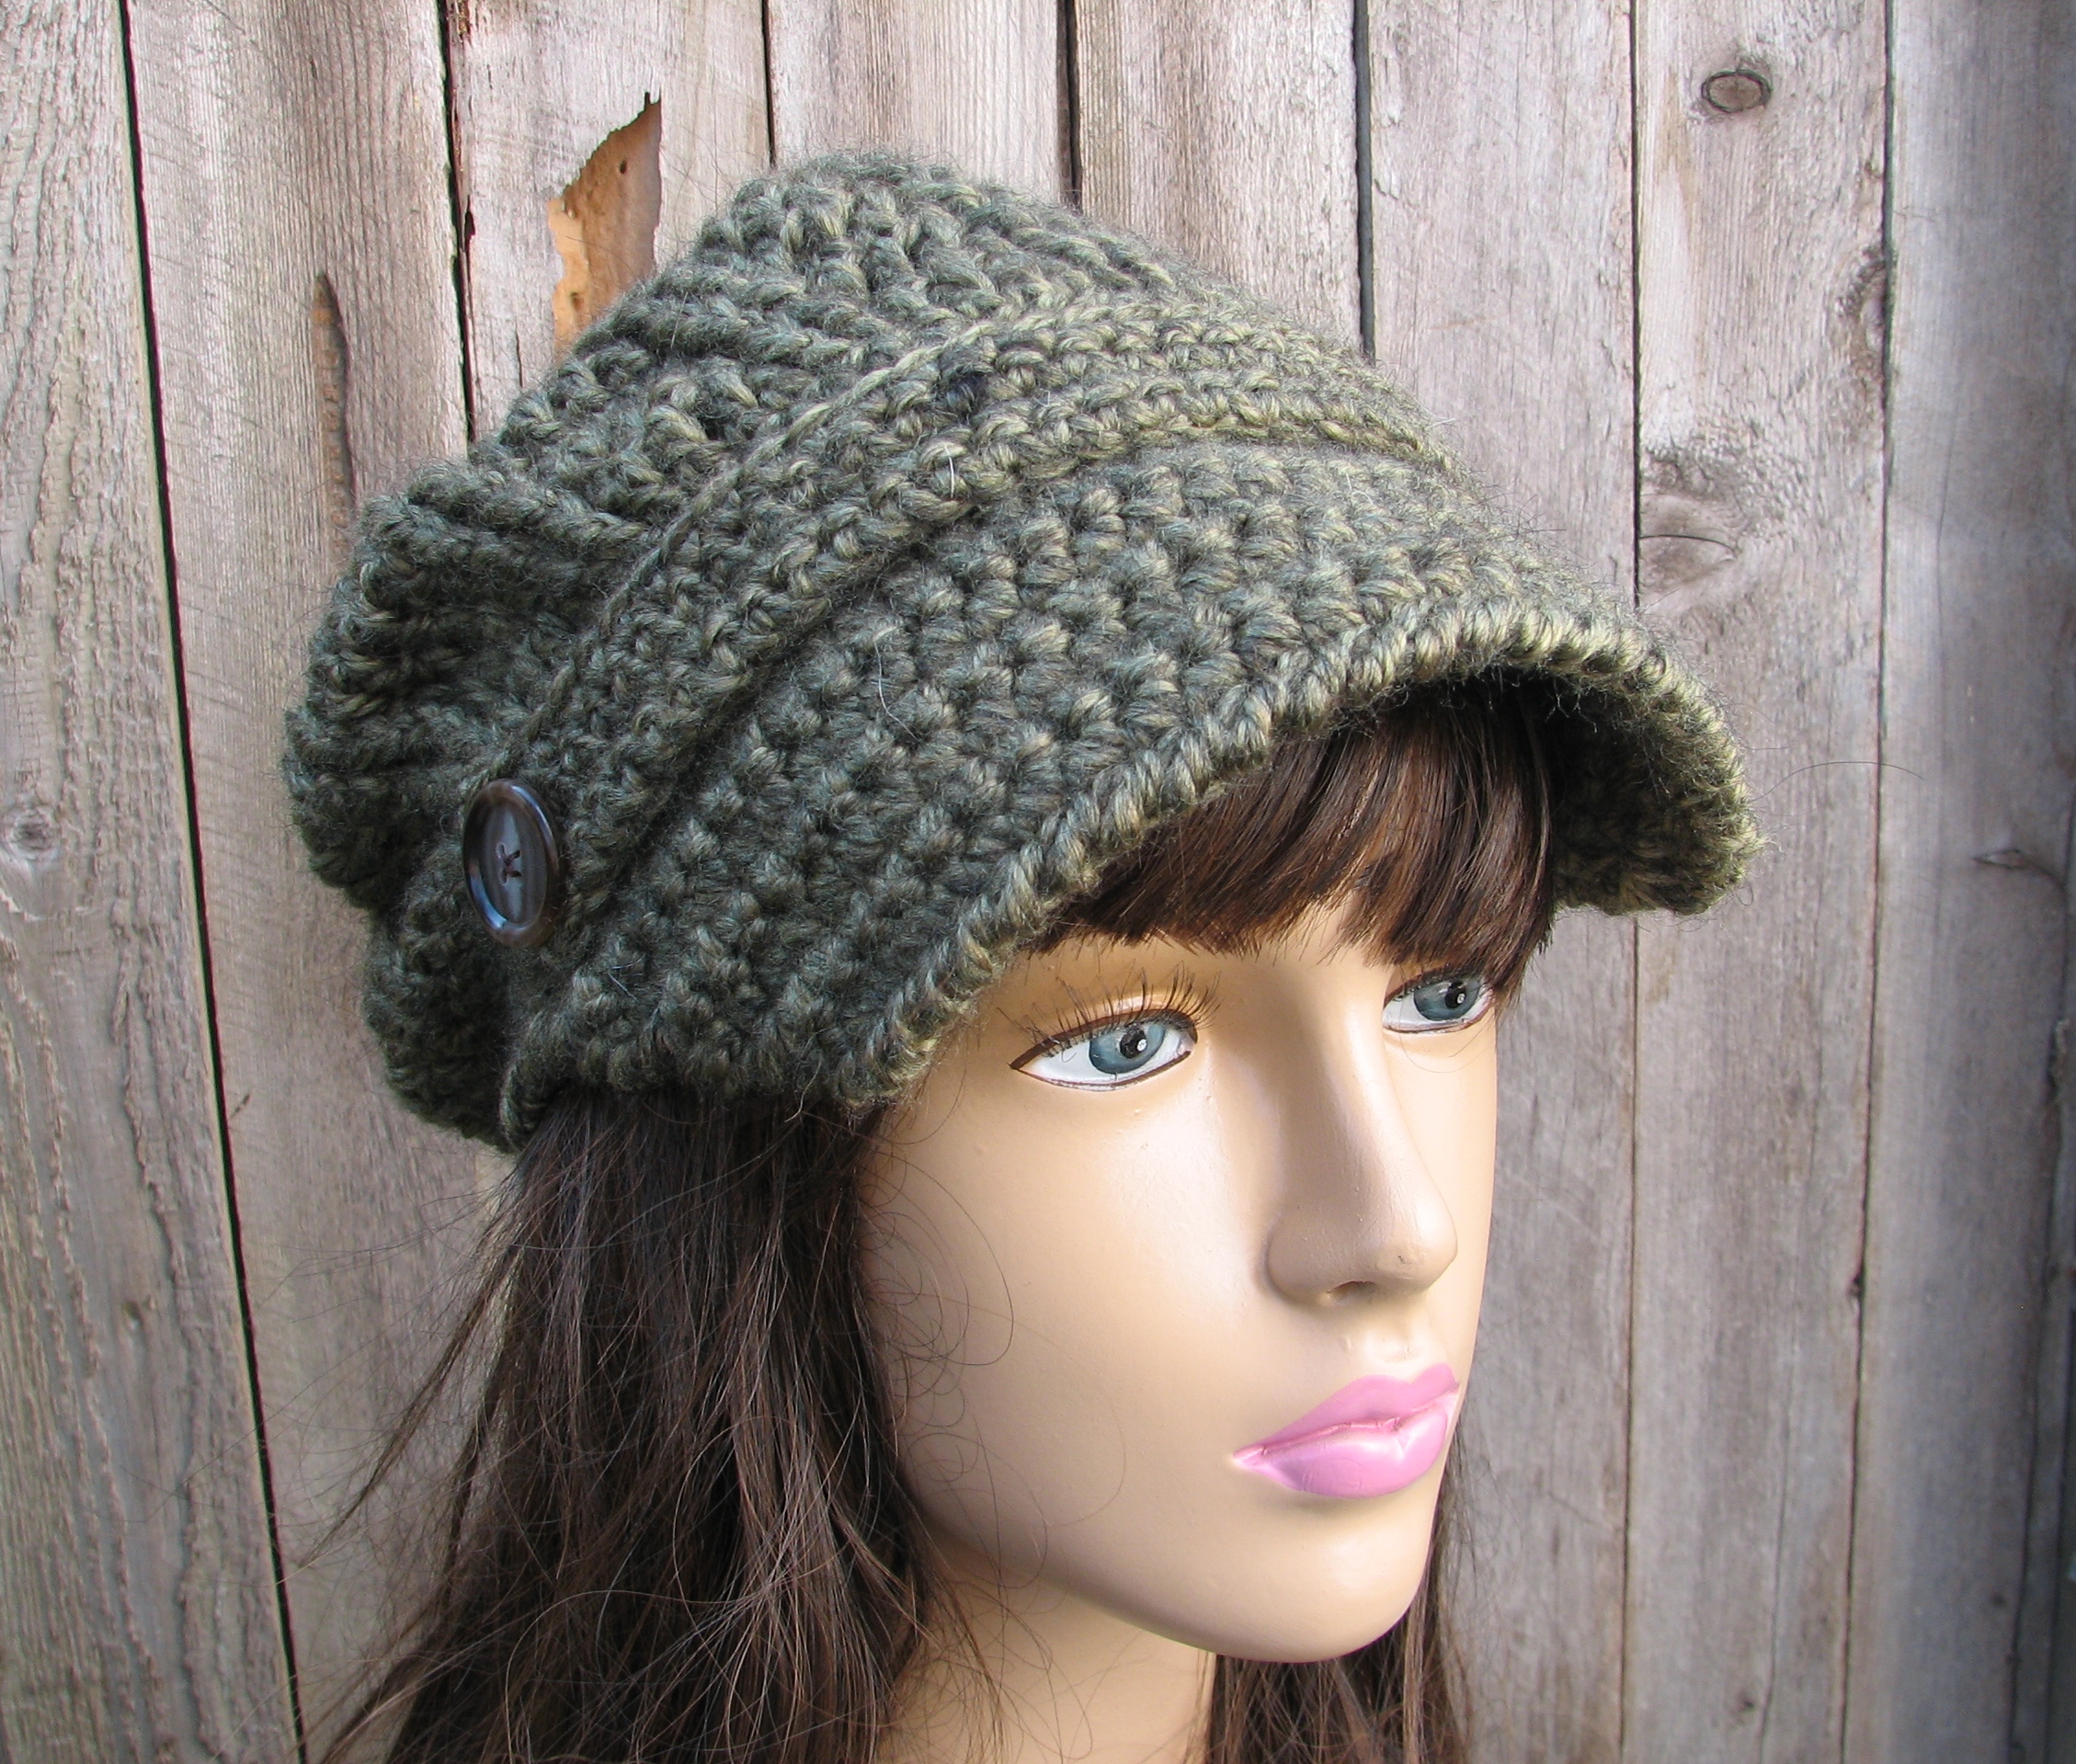 CROCHET PATTERN!!! Crochet Hat - Newsboy Hat, Crochet Pattern PDF,Easy